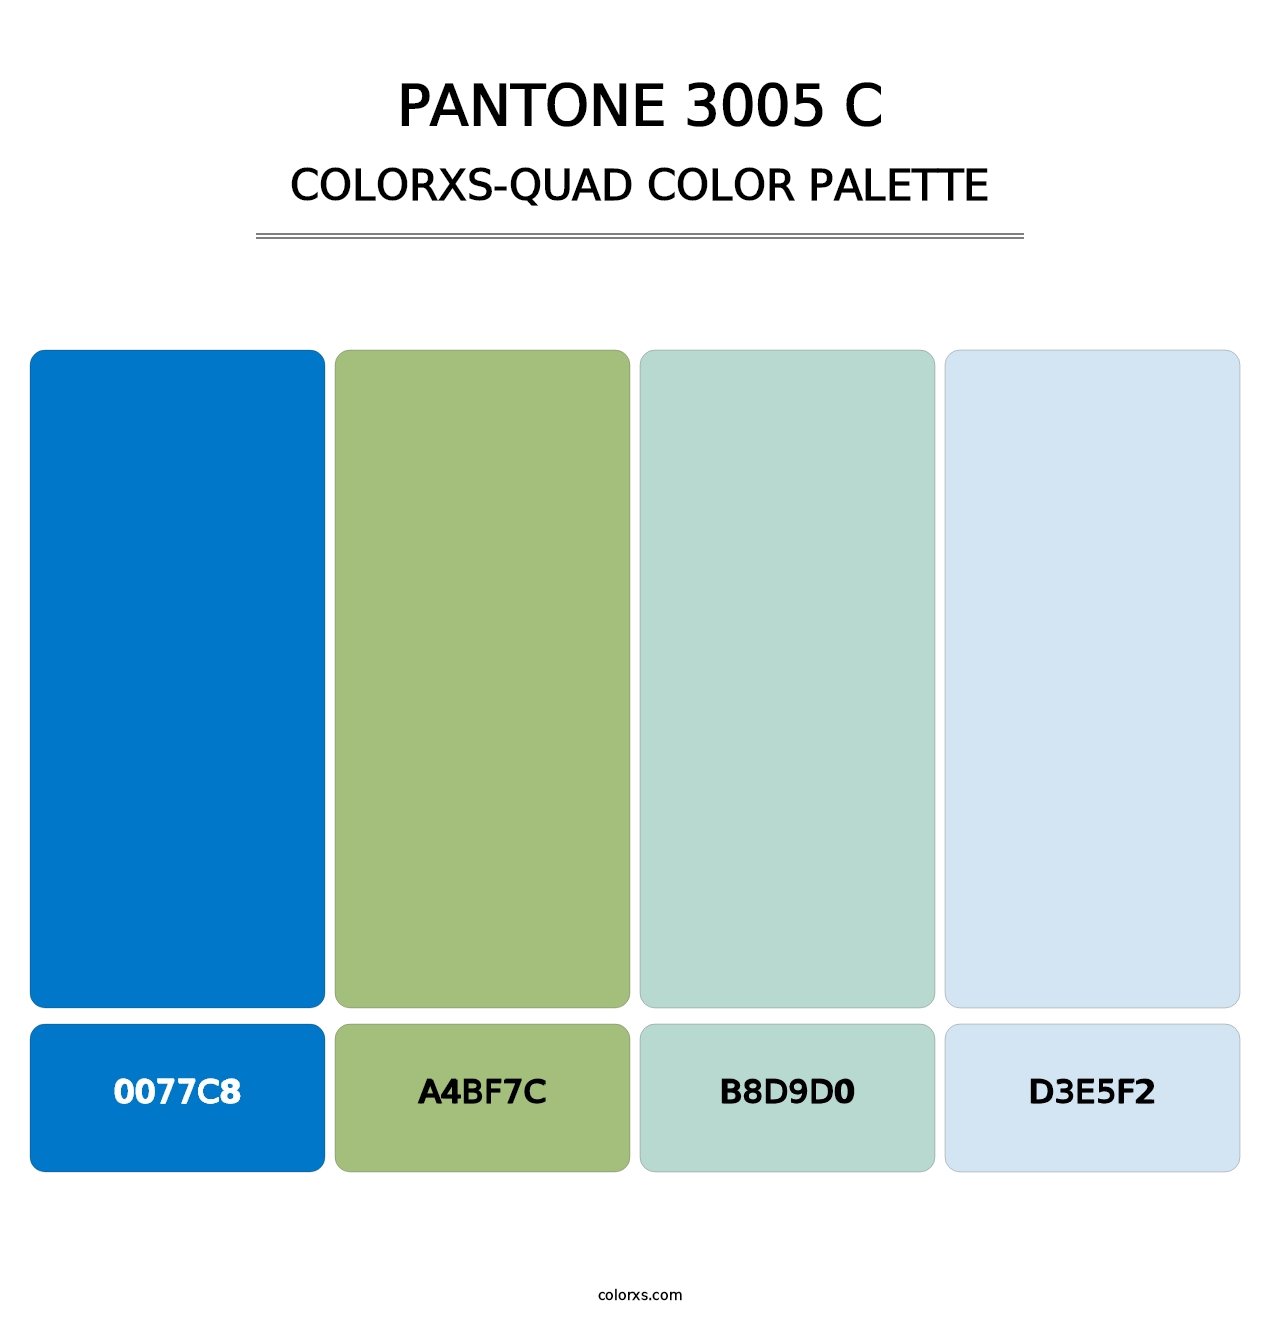 PANTONE 3005 C - Colorxs Quad Palette